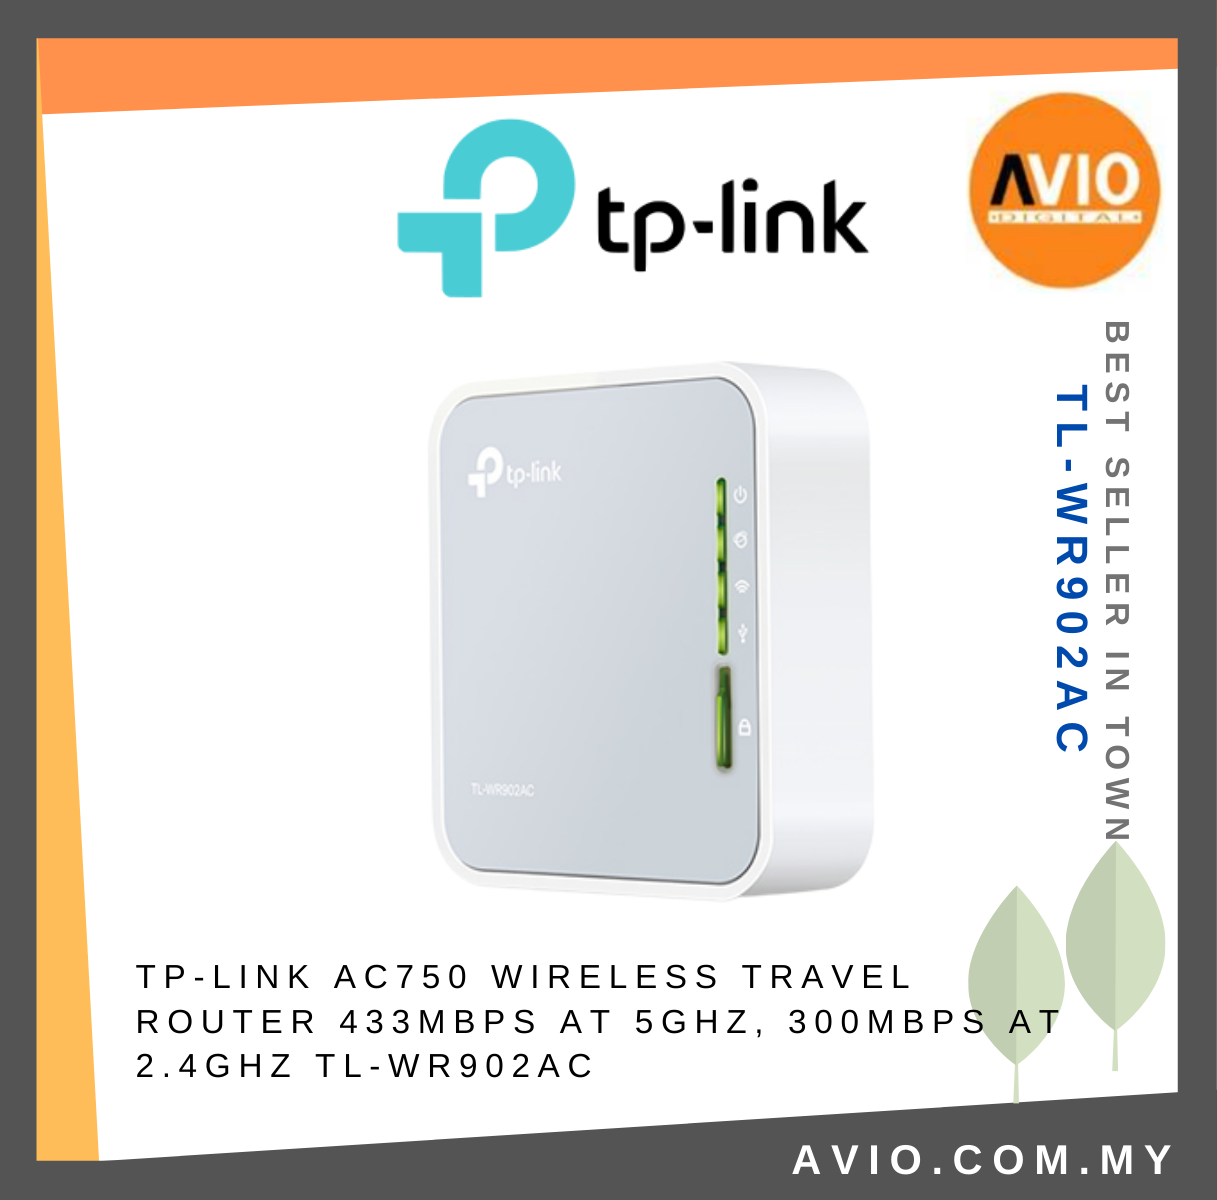 TP-LINK Tplink AC750 Wireless Travel Router Hotspot Mode Dual Band 2.4GHz  5GHz 3 Antennas USB 2.0 Port 3G/4G TL-WR902AC Network Johor Bahru (JB),  Kempas, Johor Jaya Supplier, Suppliers, Supply, Supplies | Avio